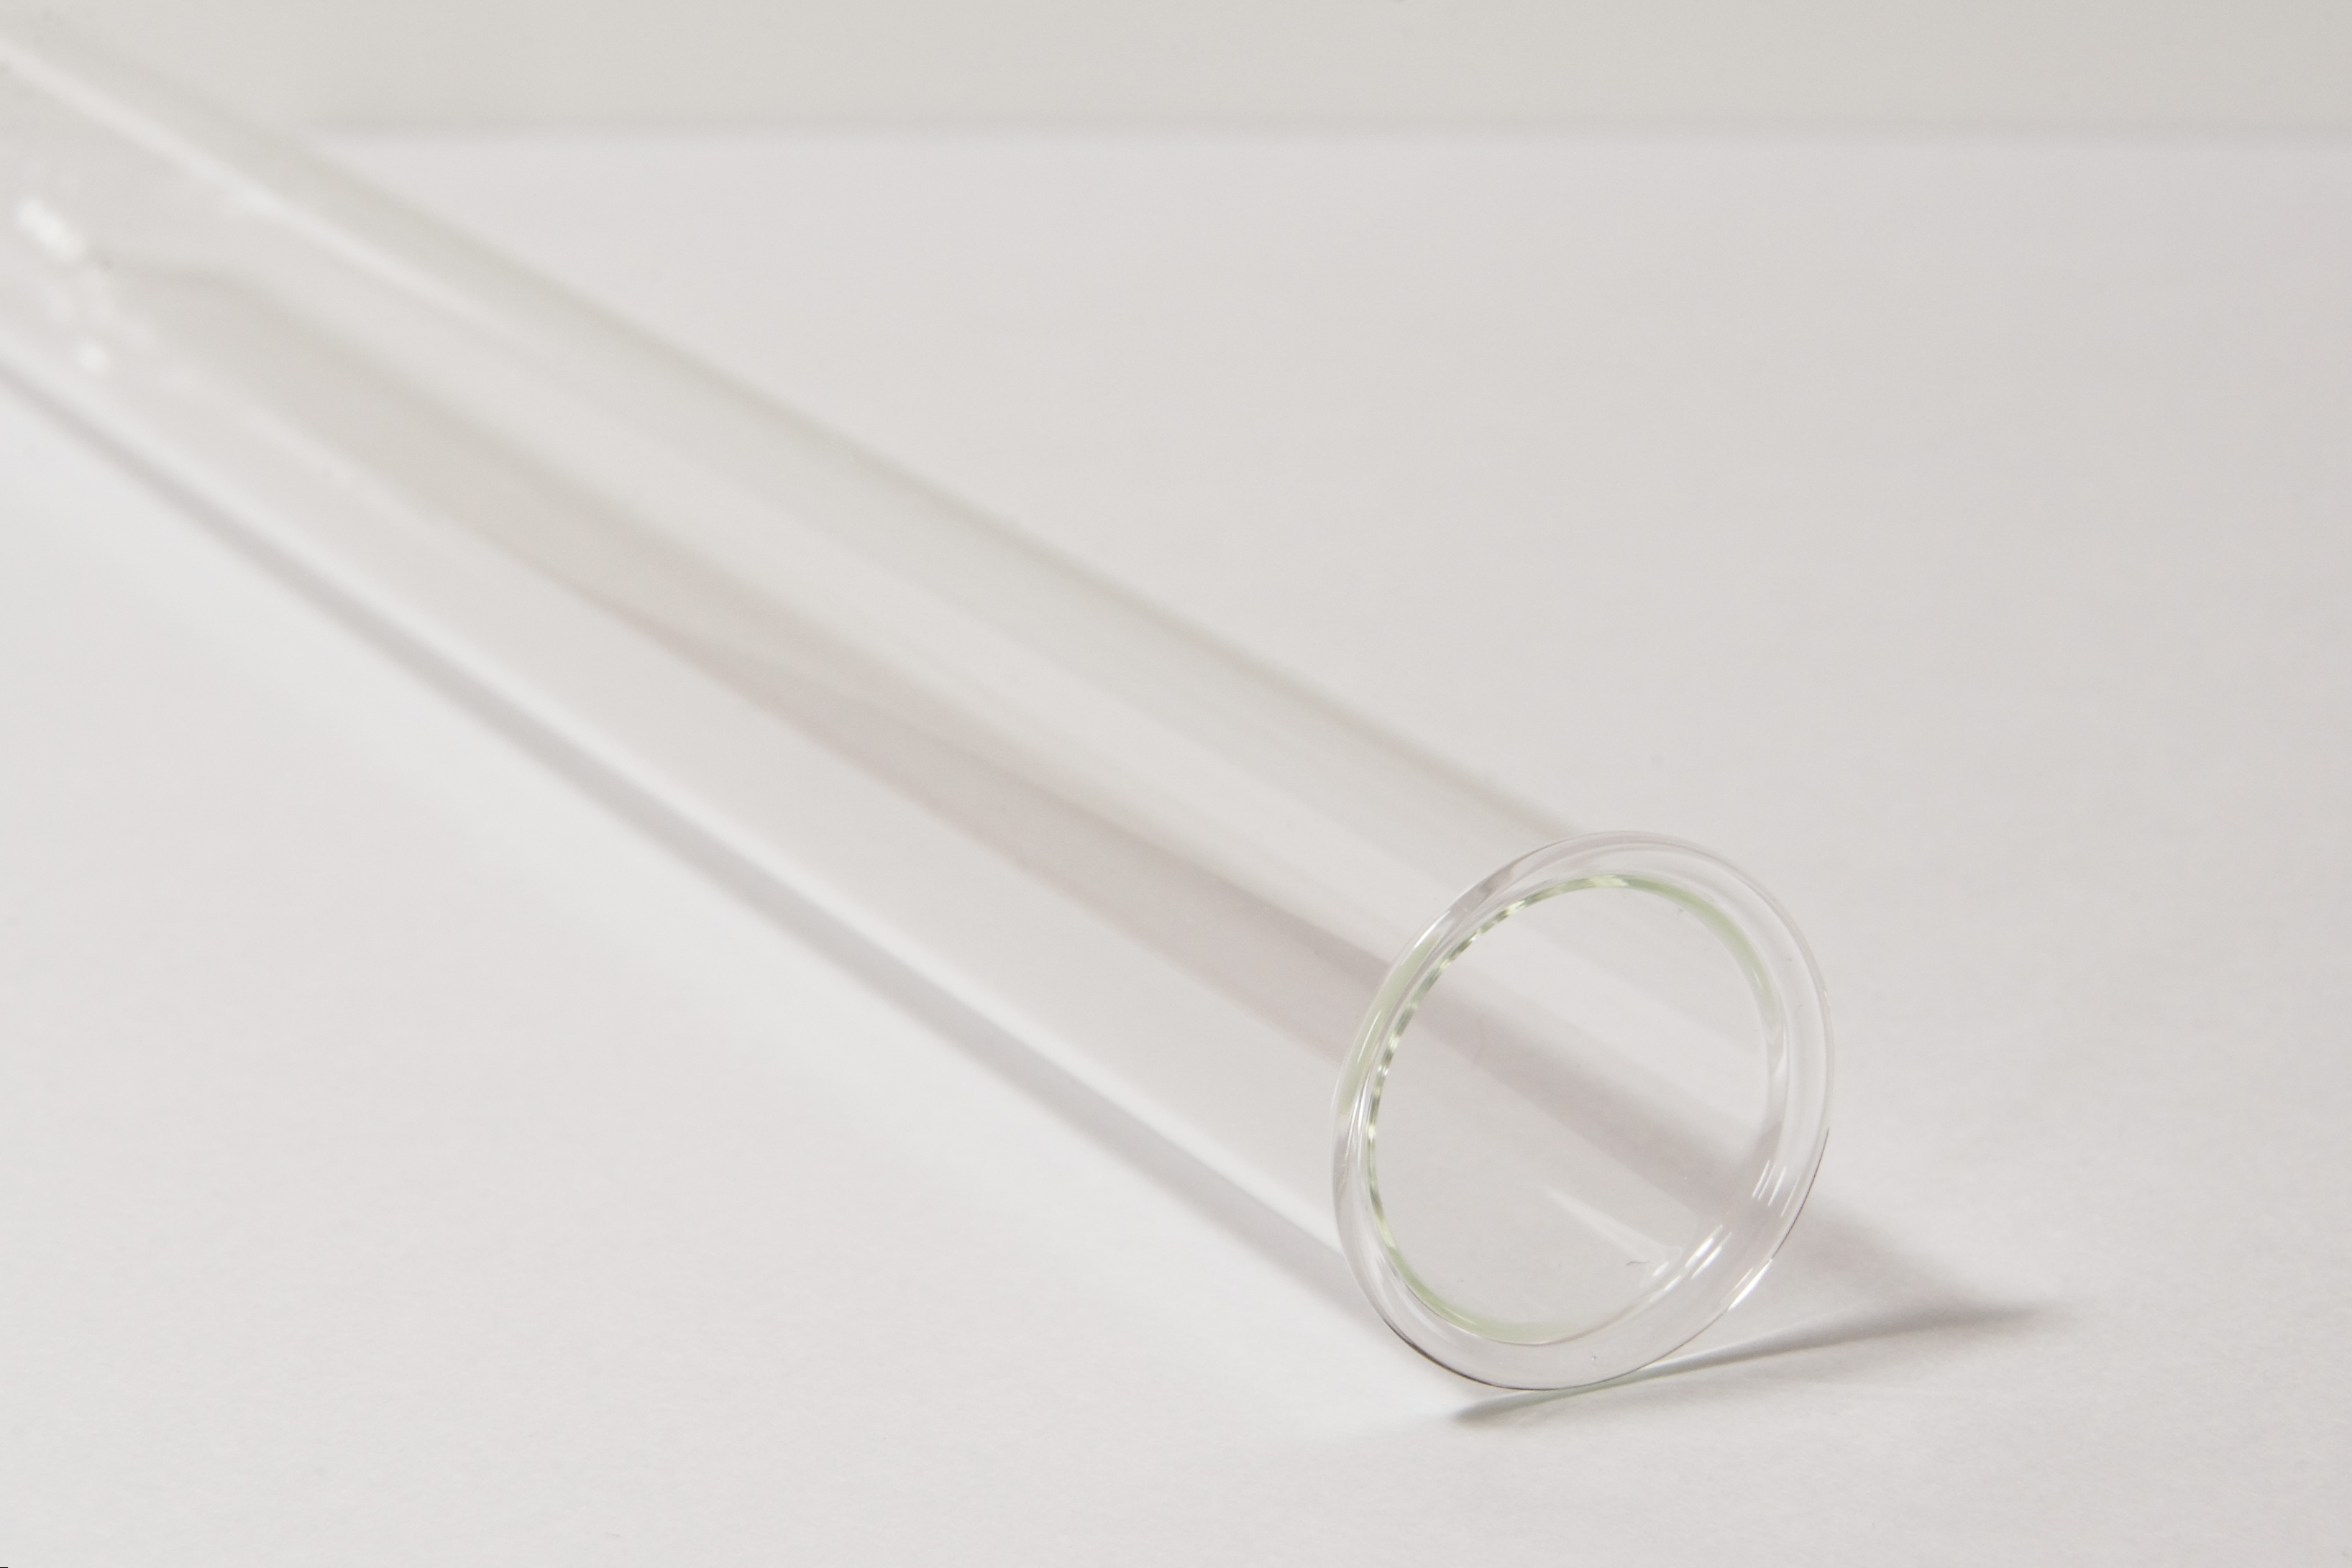 clear glass tube